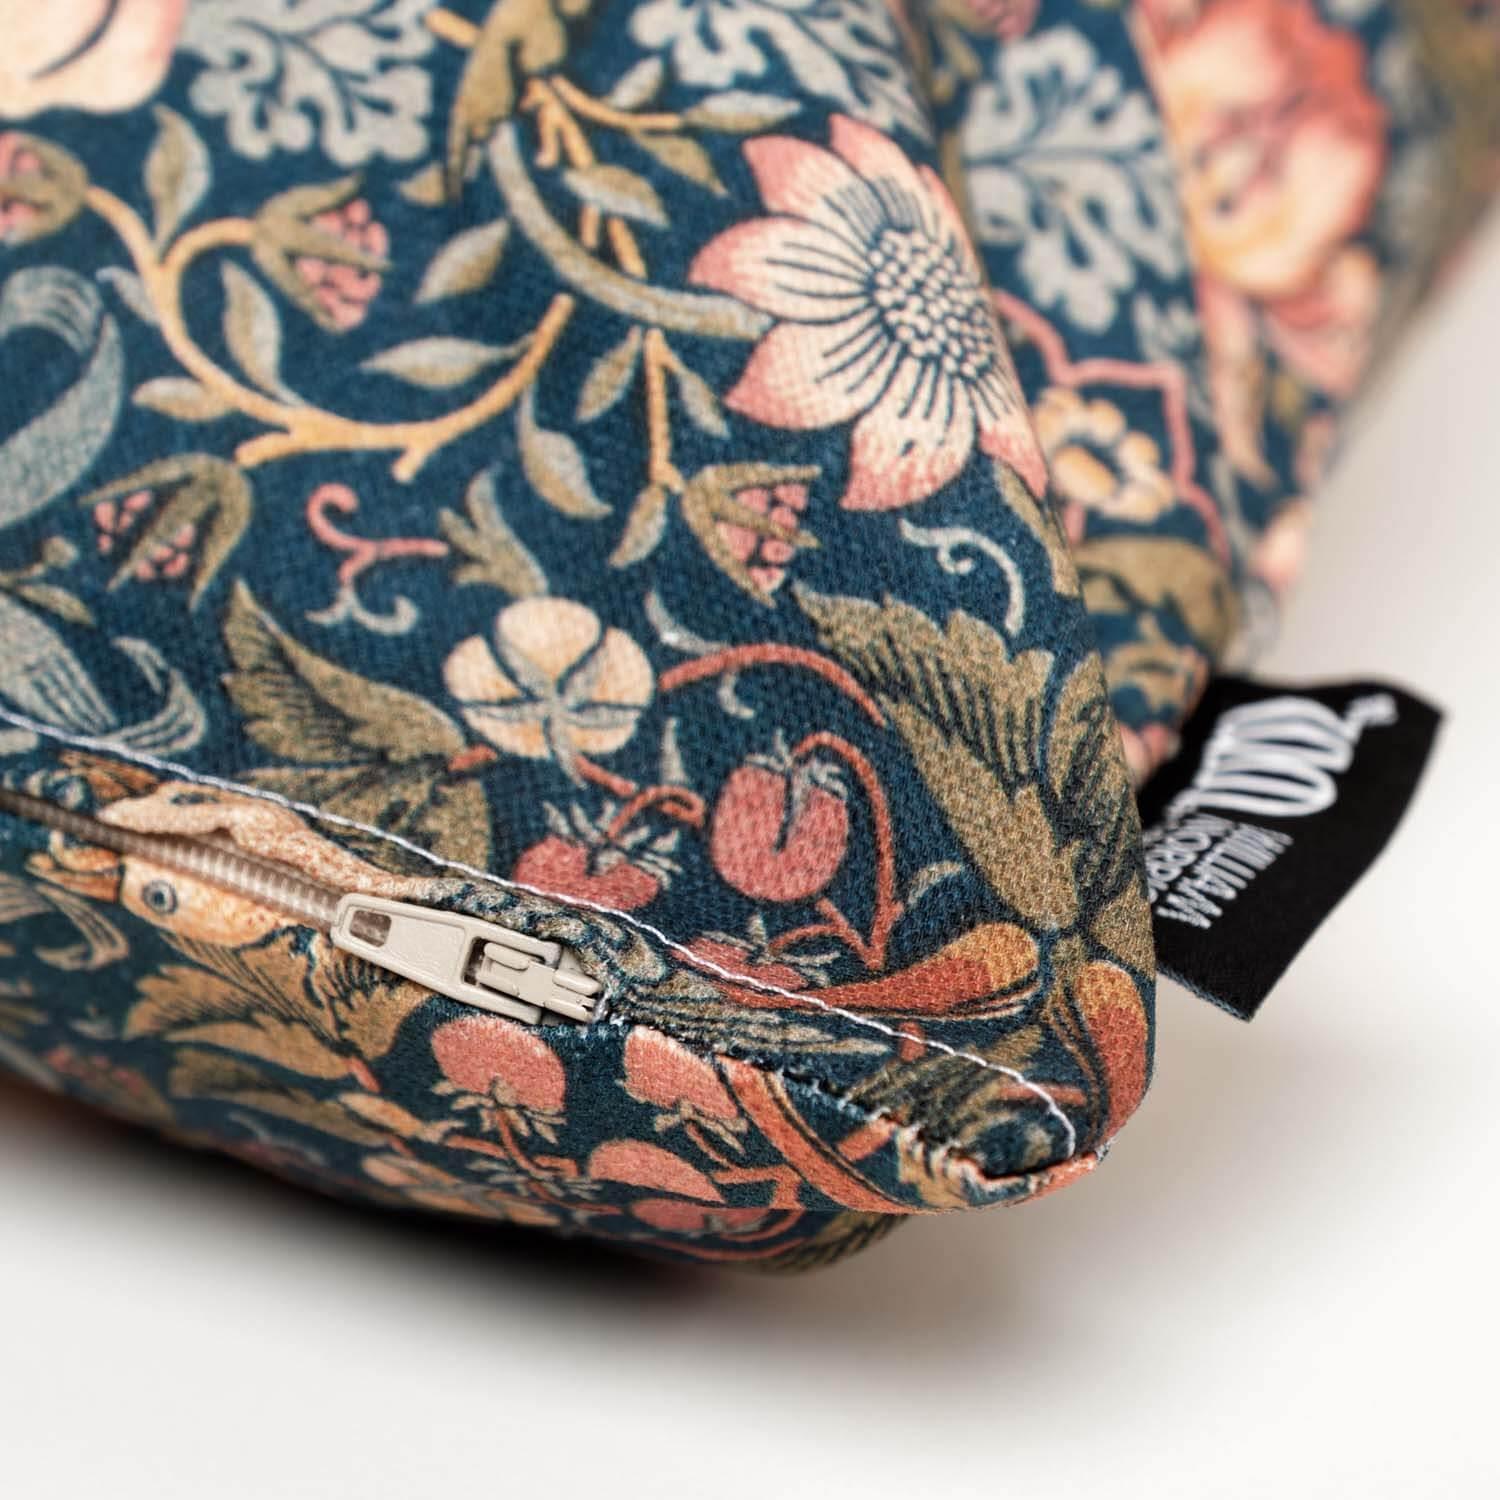 Daisy - William Morris Cushion - Handmade Cushions UK - WeLoveCushions